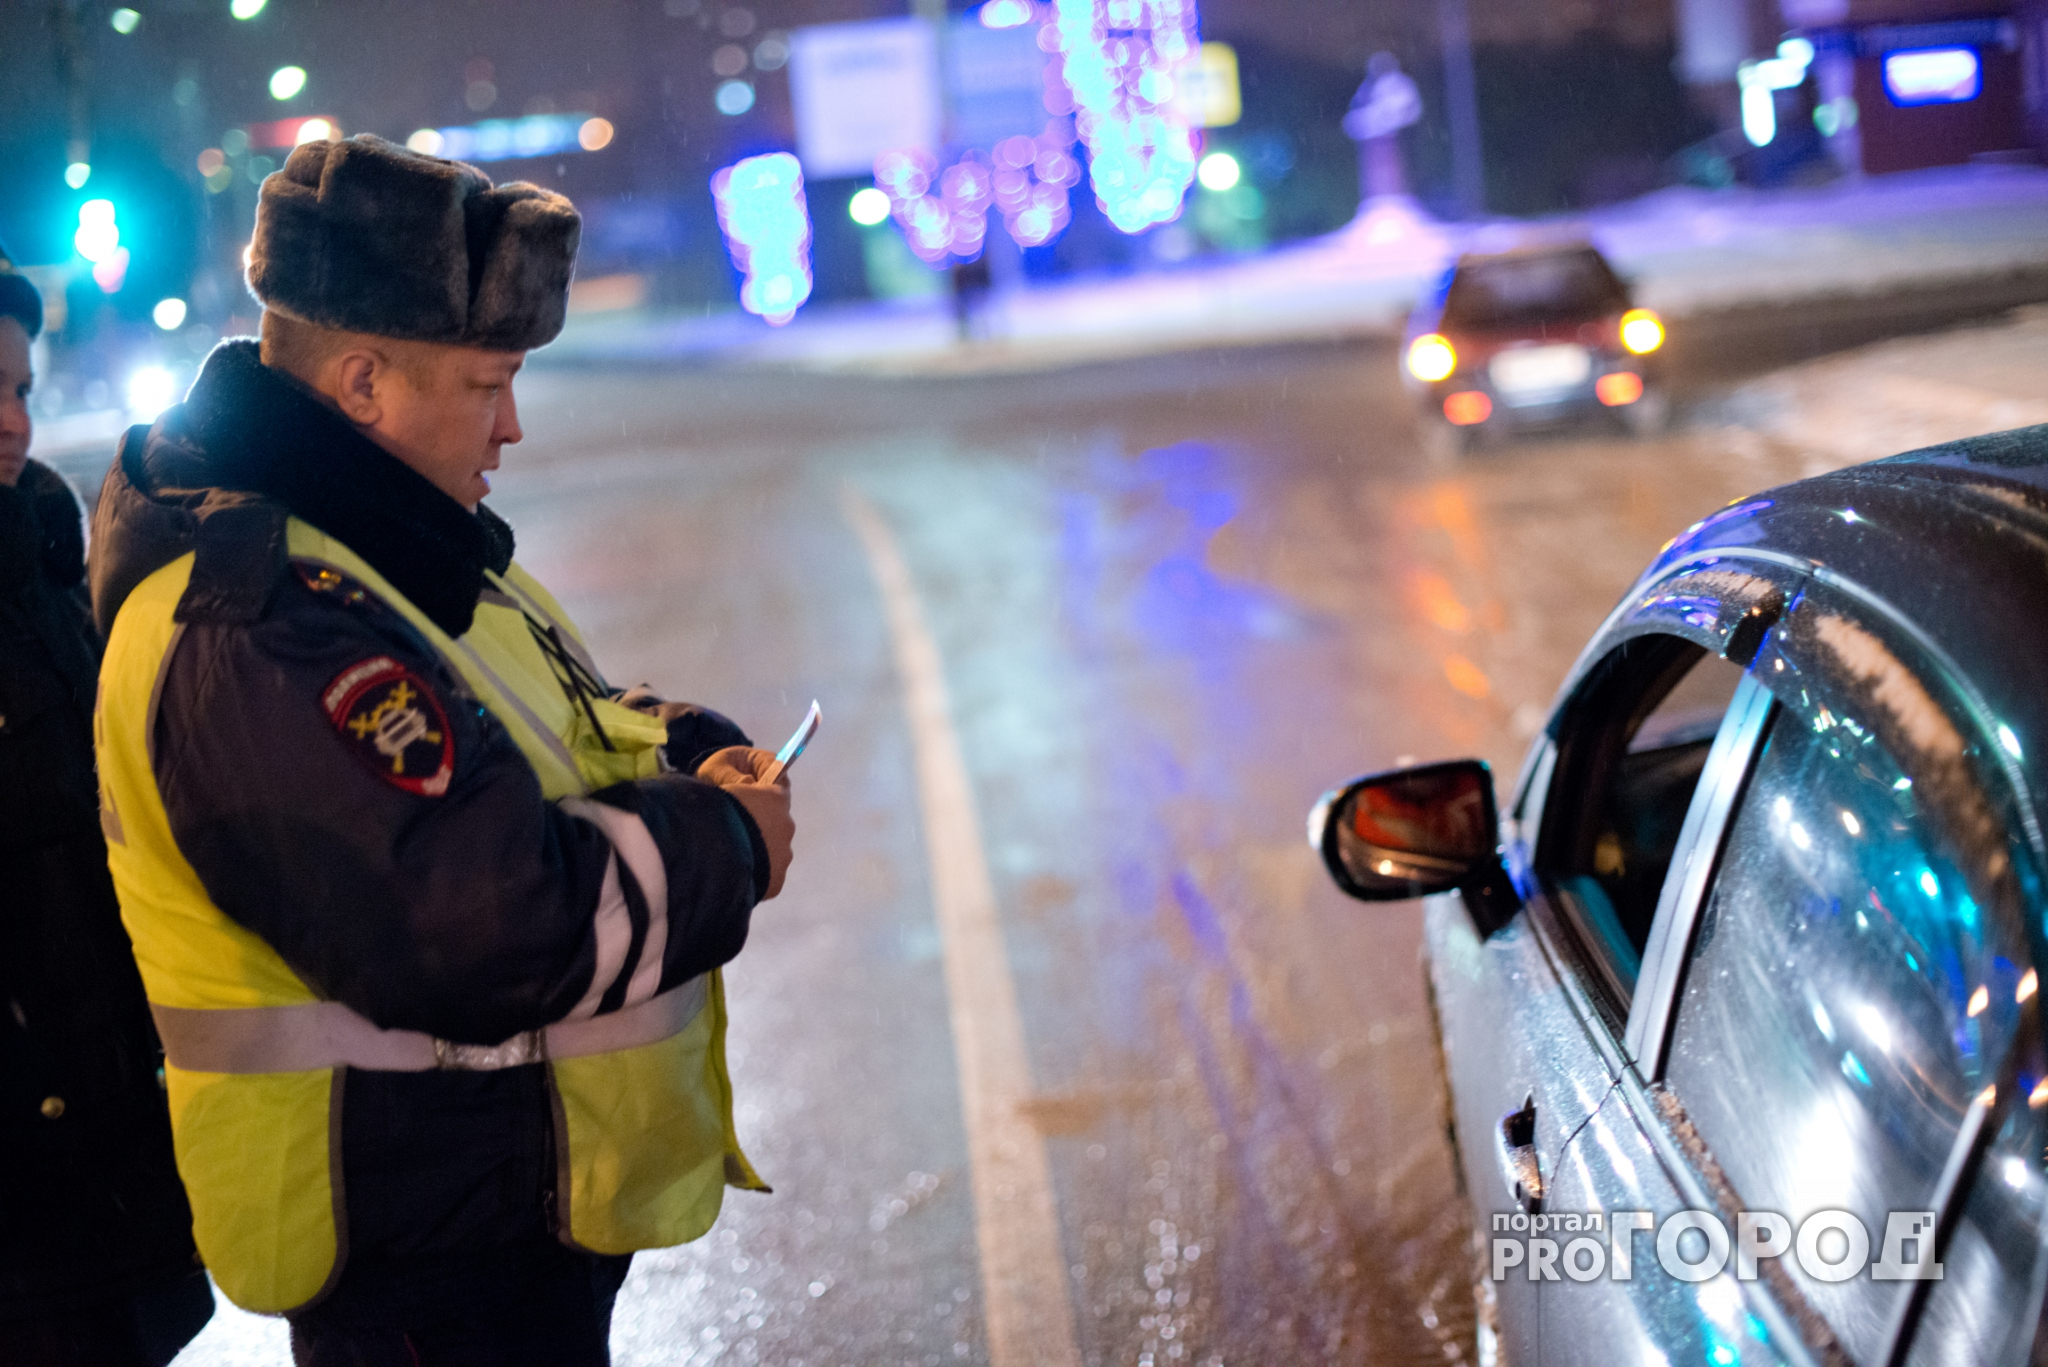 МВД планирует обязать водителей носить светоотражатели